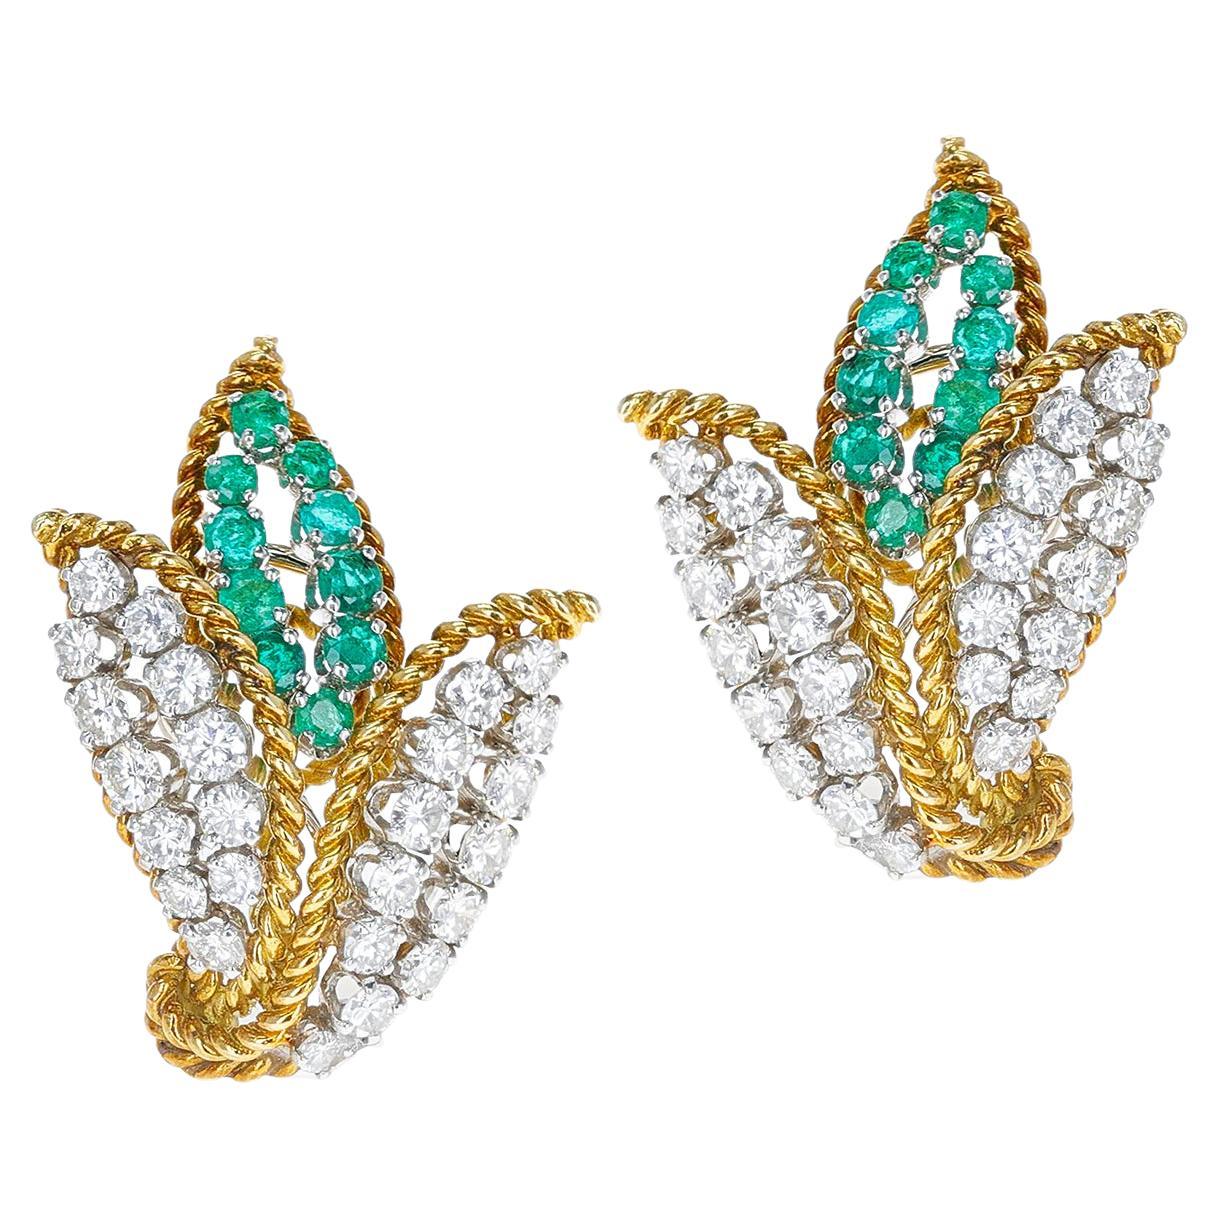 Runde Diamanten und Smaragde dreiblättrige Design-Ohrringe, 18K und Platin